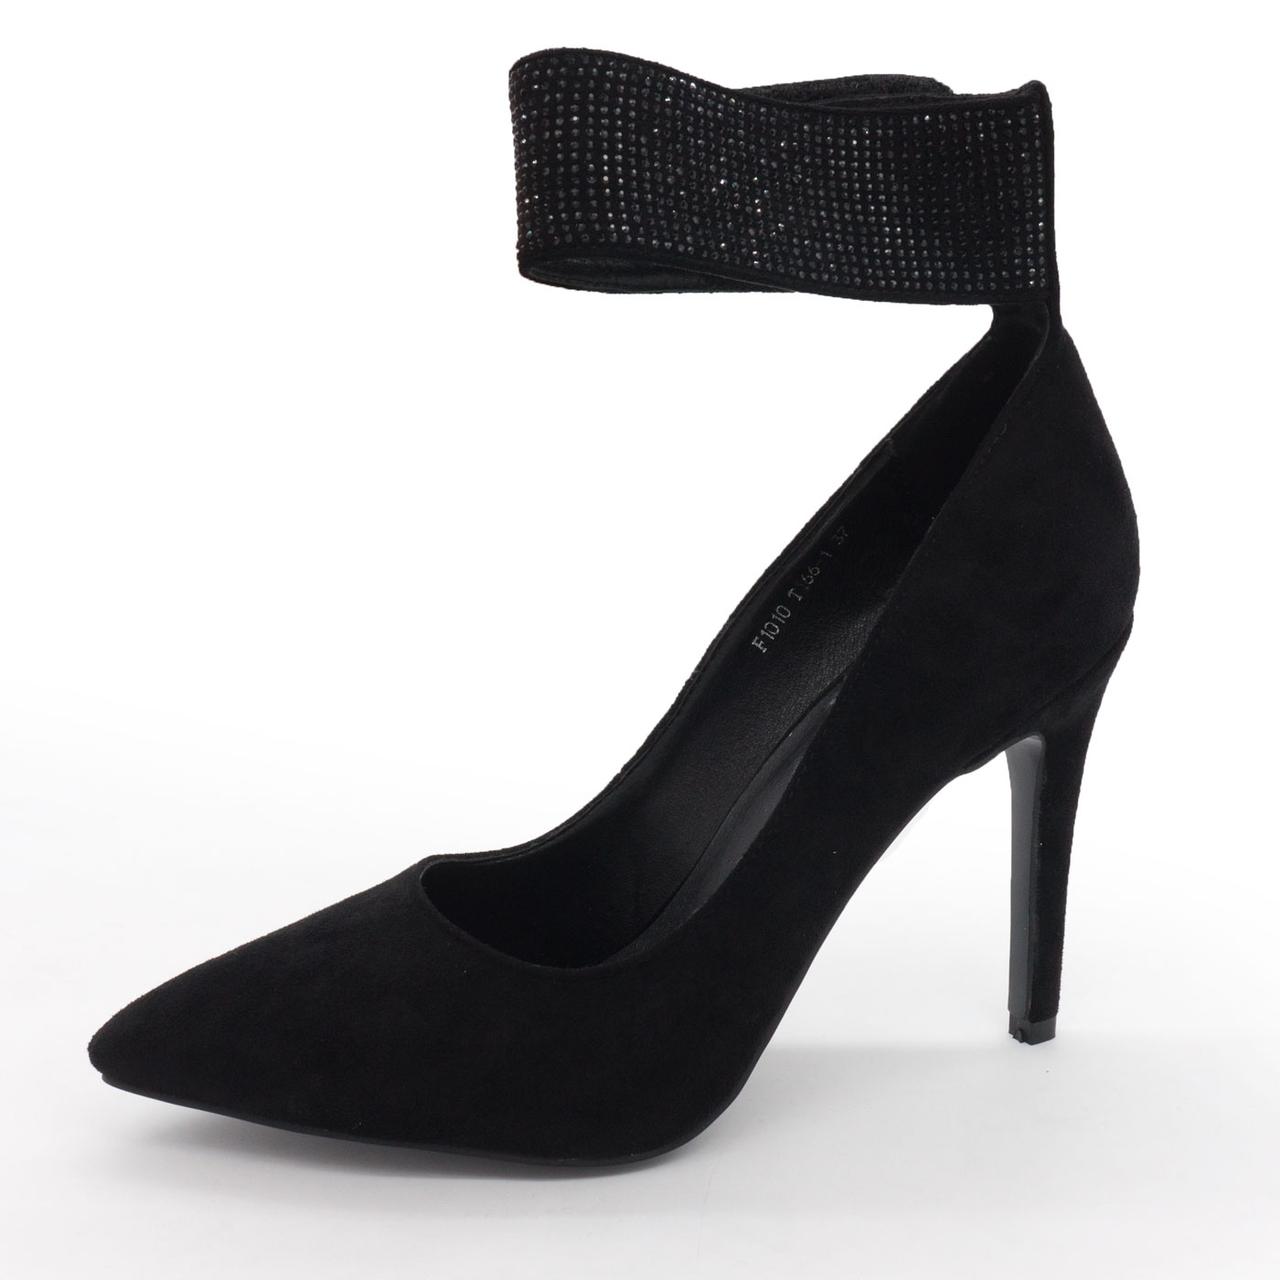 Жіночі туфлі LIICI F1010-T66-1 чорні 37. Розміри в наявності: 37, 38, 39, 40.